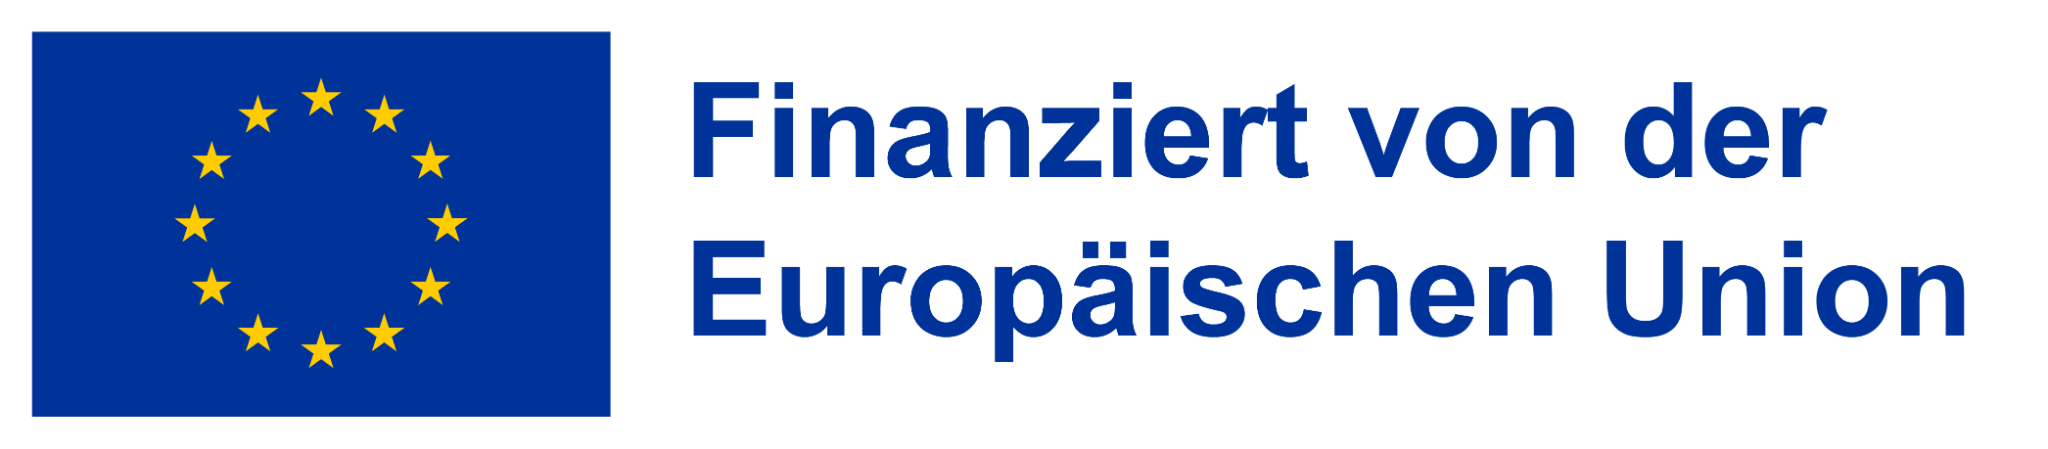 EU Europäische Union – Europäischer Sozialfonds